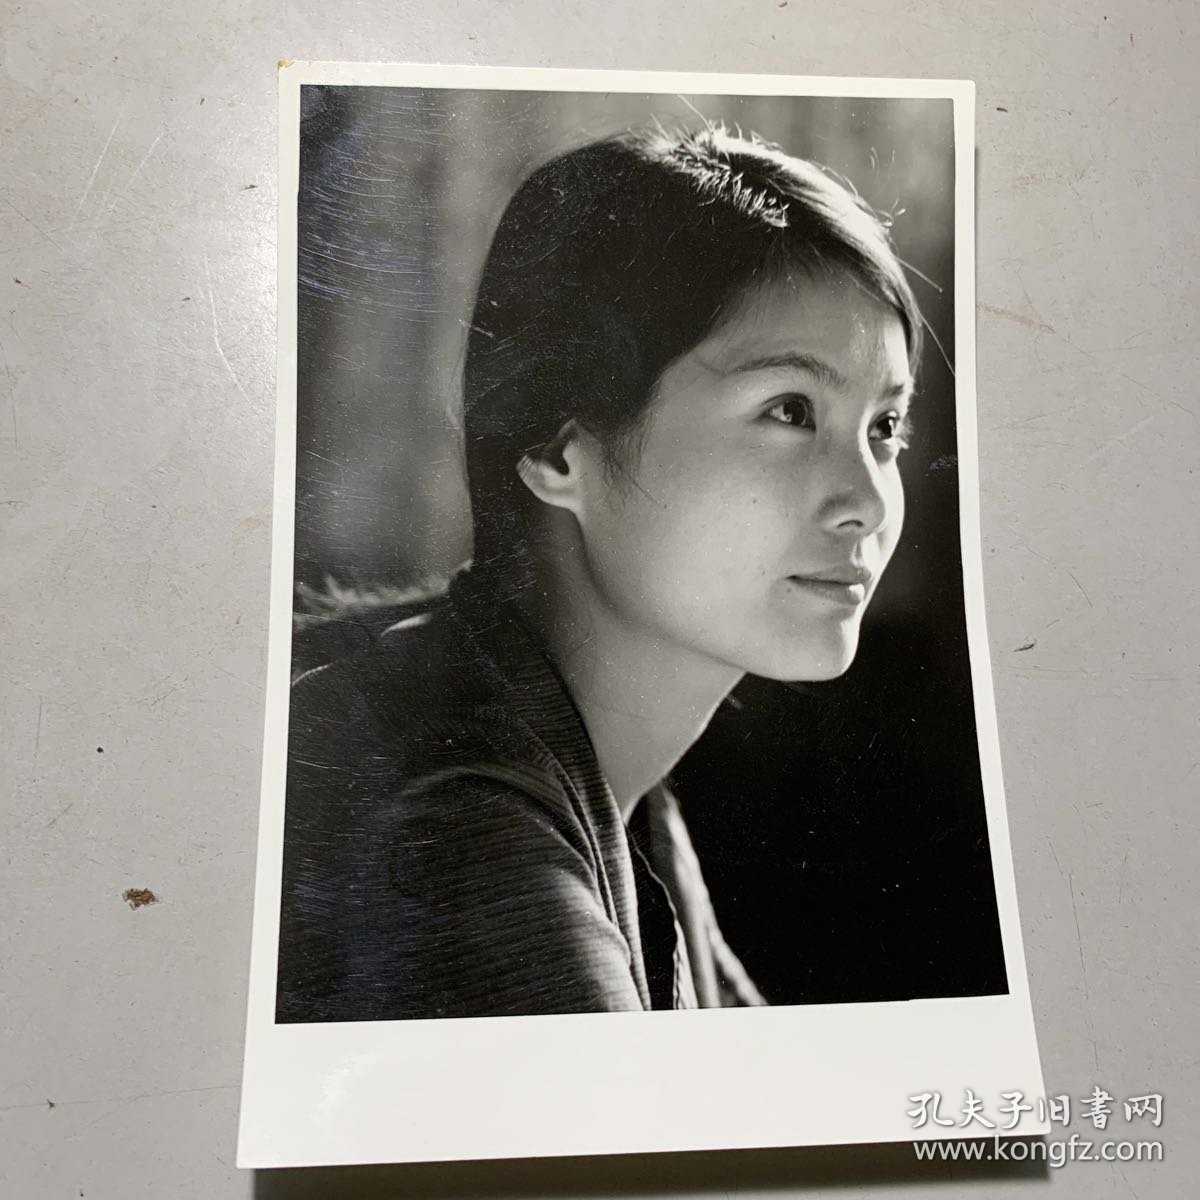 【中影发行放映公司旧藏】八十年代专业摄影师拍摄美女明星黑白反银照片一张